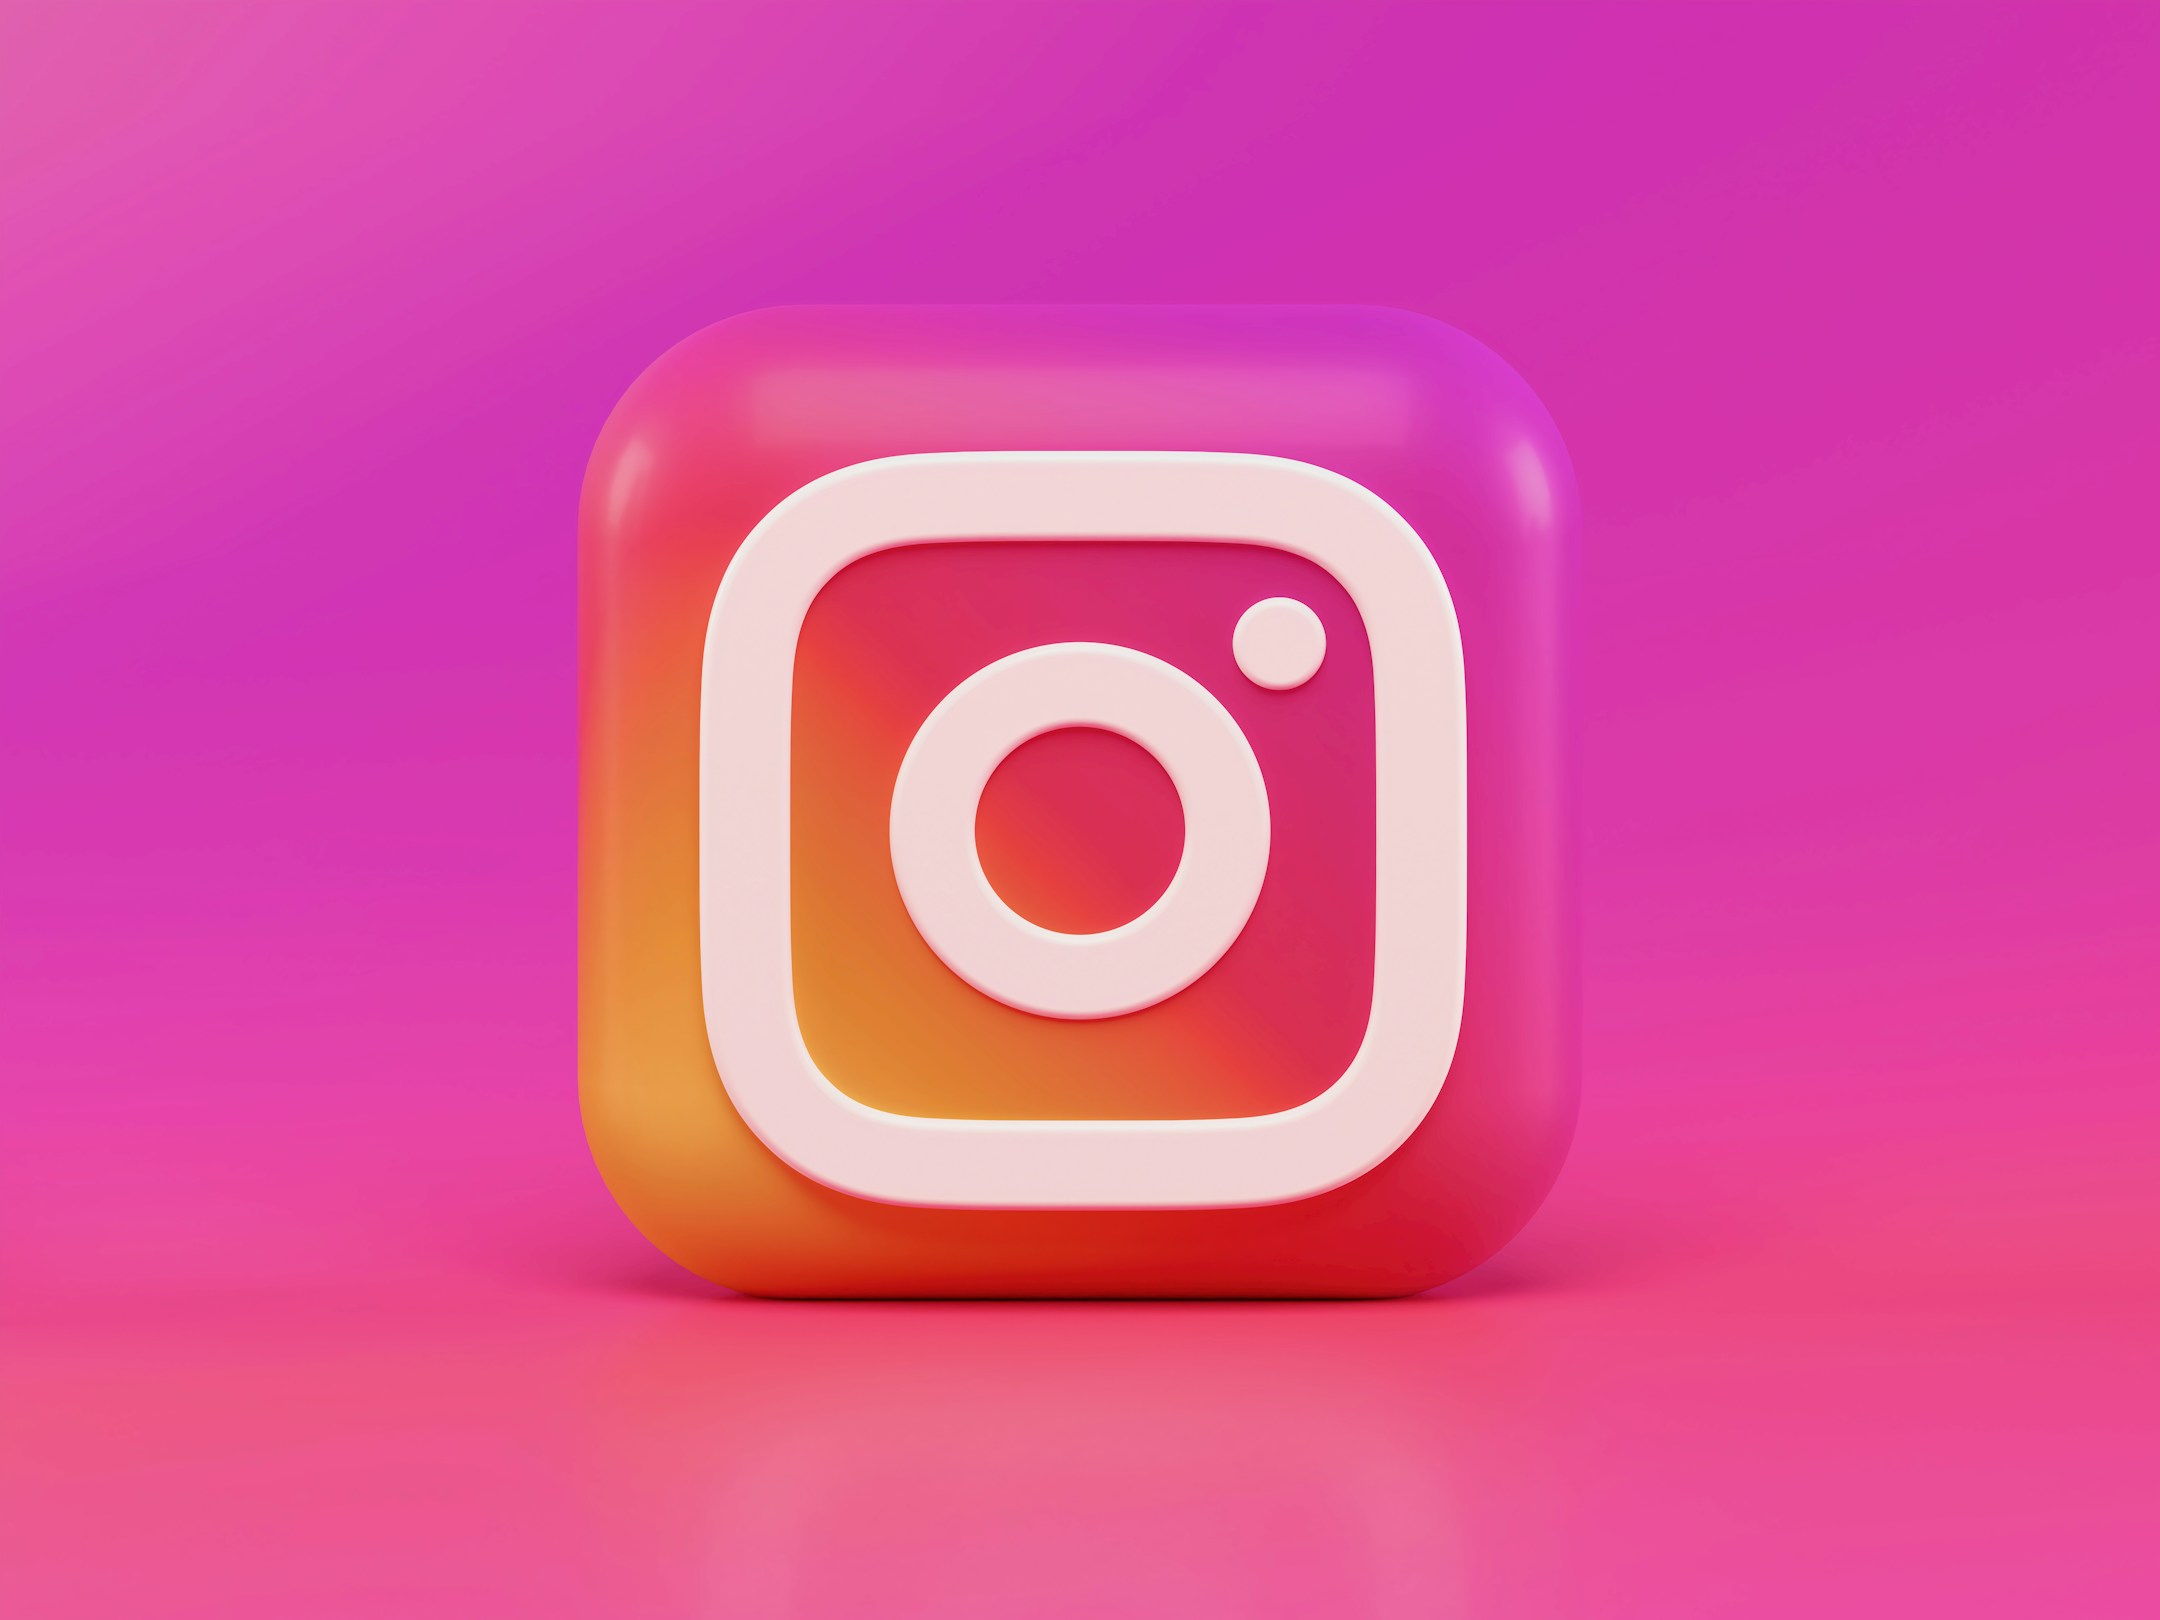 इंस्टाग्राम पर ब्लू टिक पाने के लिए फॉलो करें ये प्रोसेस - Tech and tricks  to get blue tick on instagram easily lbsv